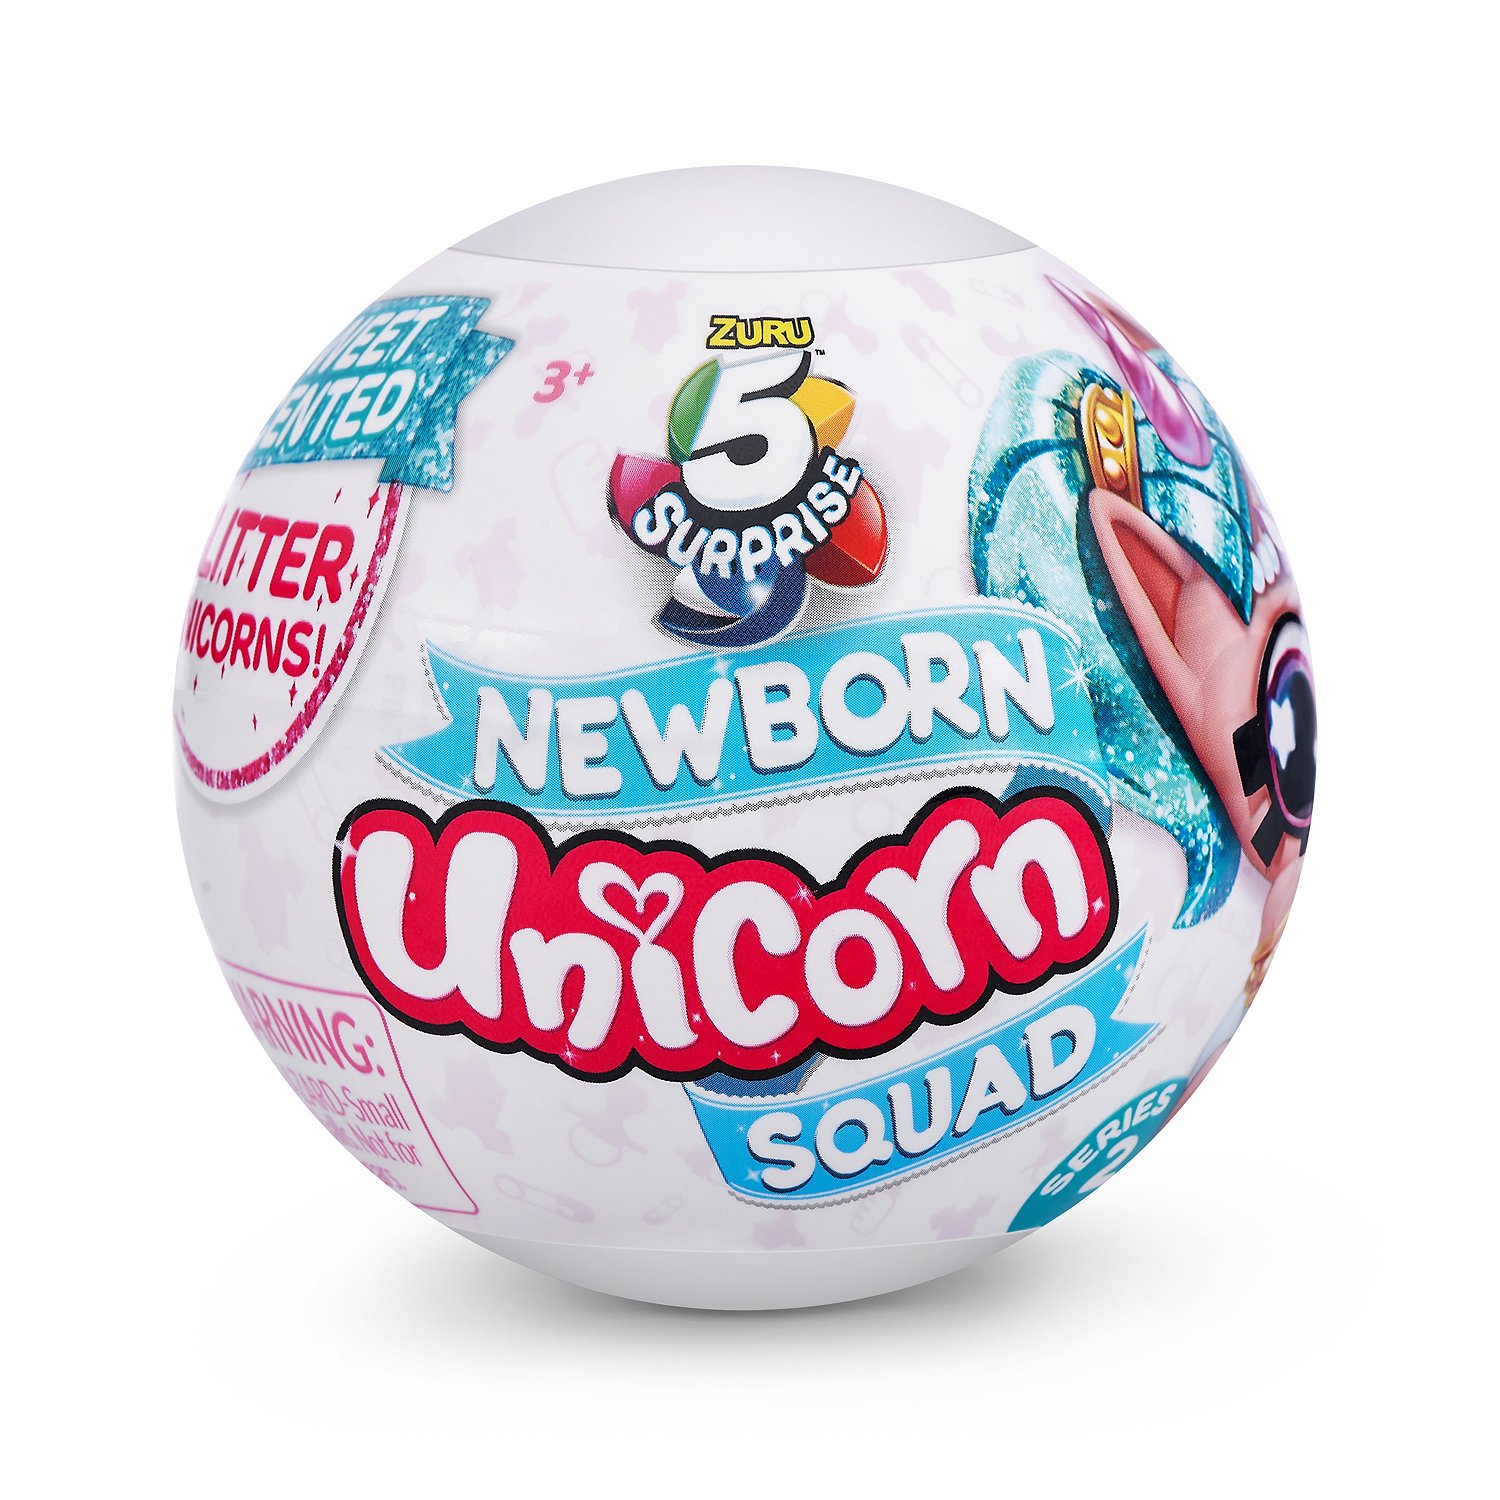 Игрушка Zuru 5 surprise Newborn Unicorn squad S5 Шар в непрозрачной упаковке (Сюрприз) 77199GQ2